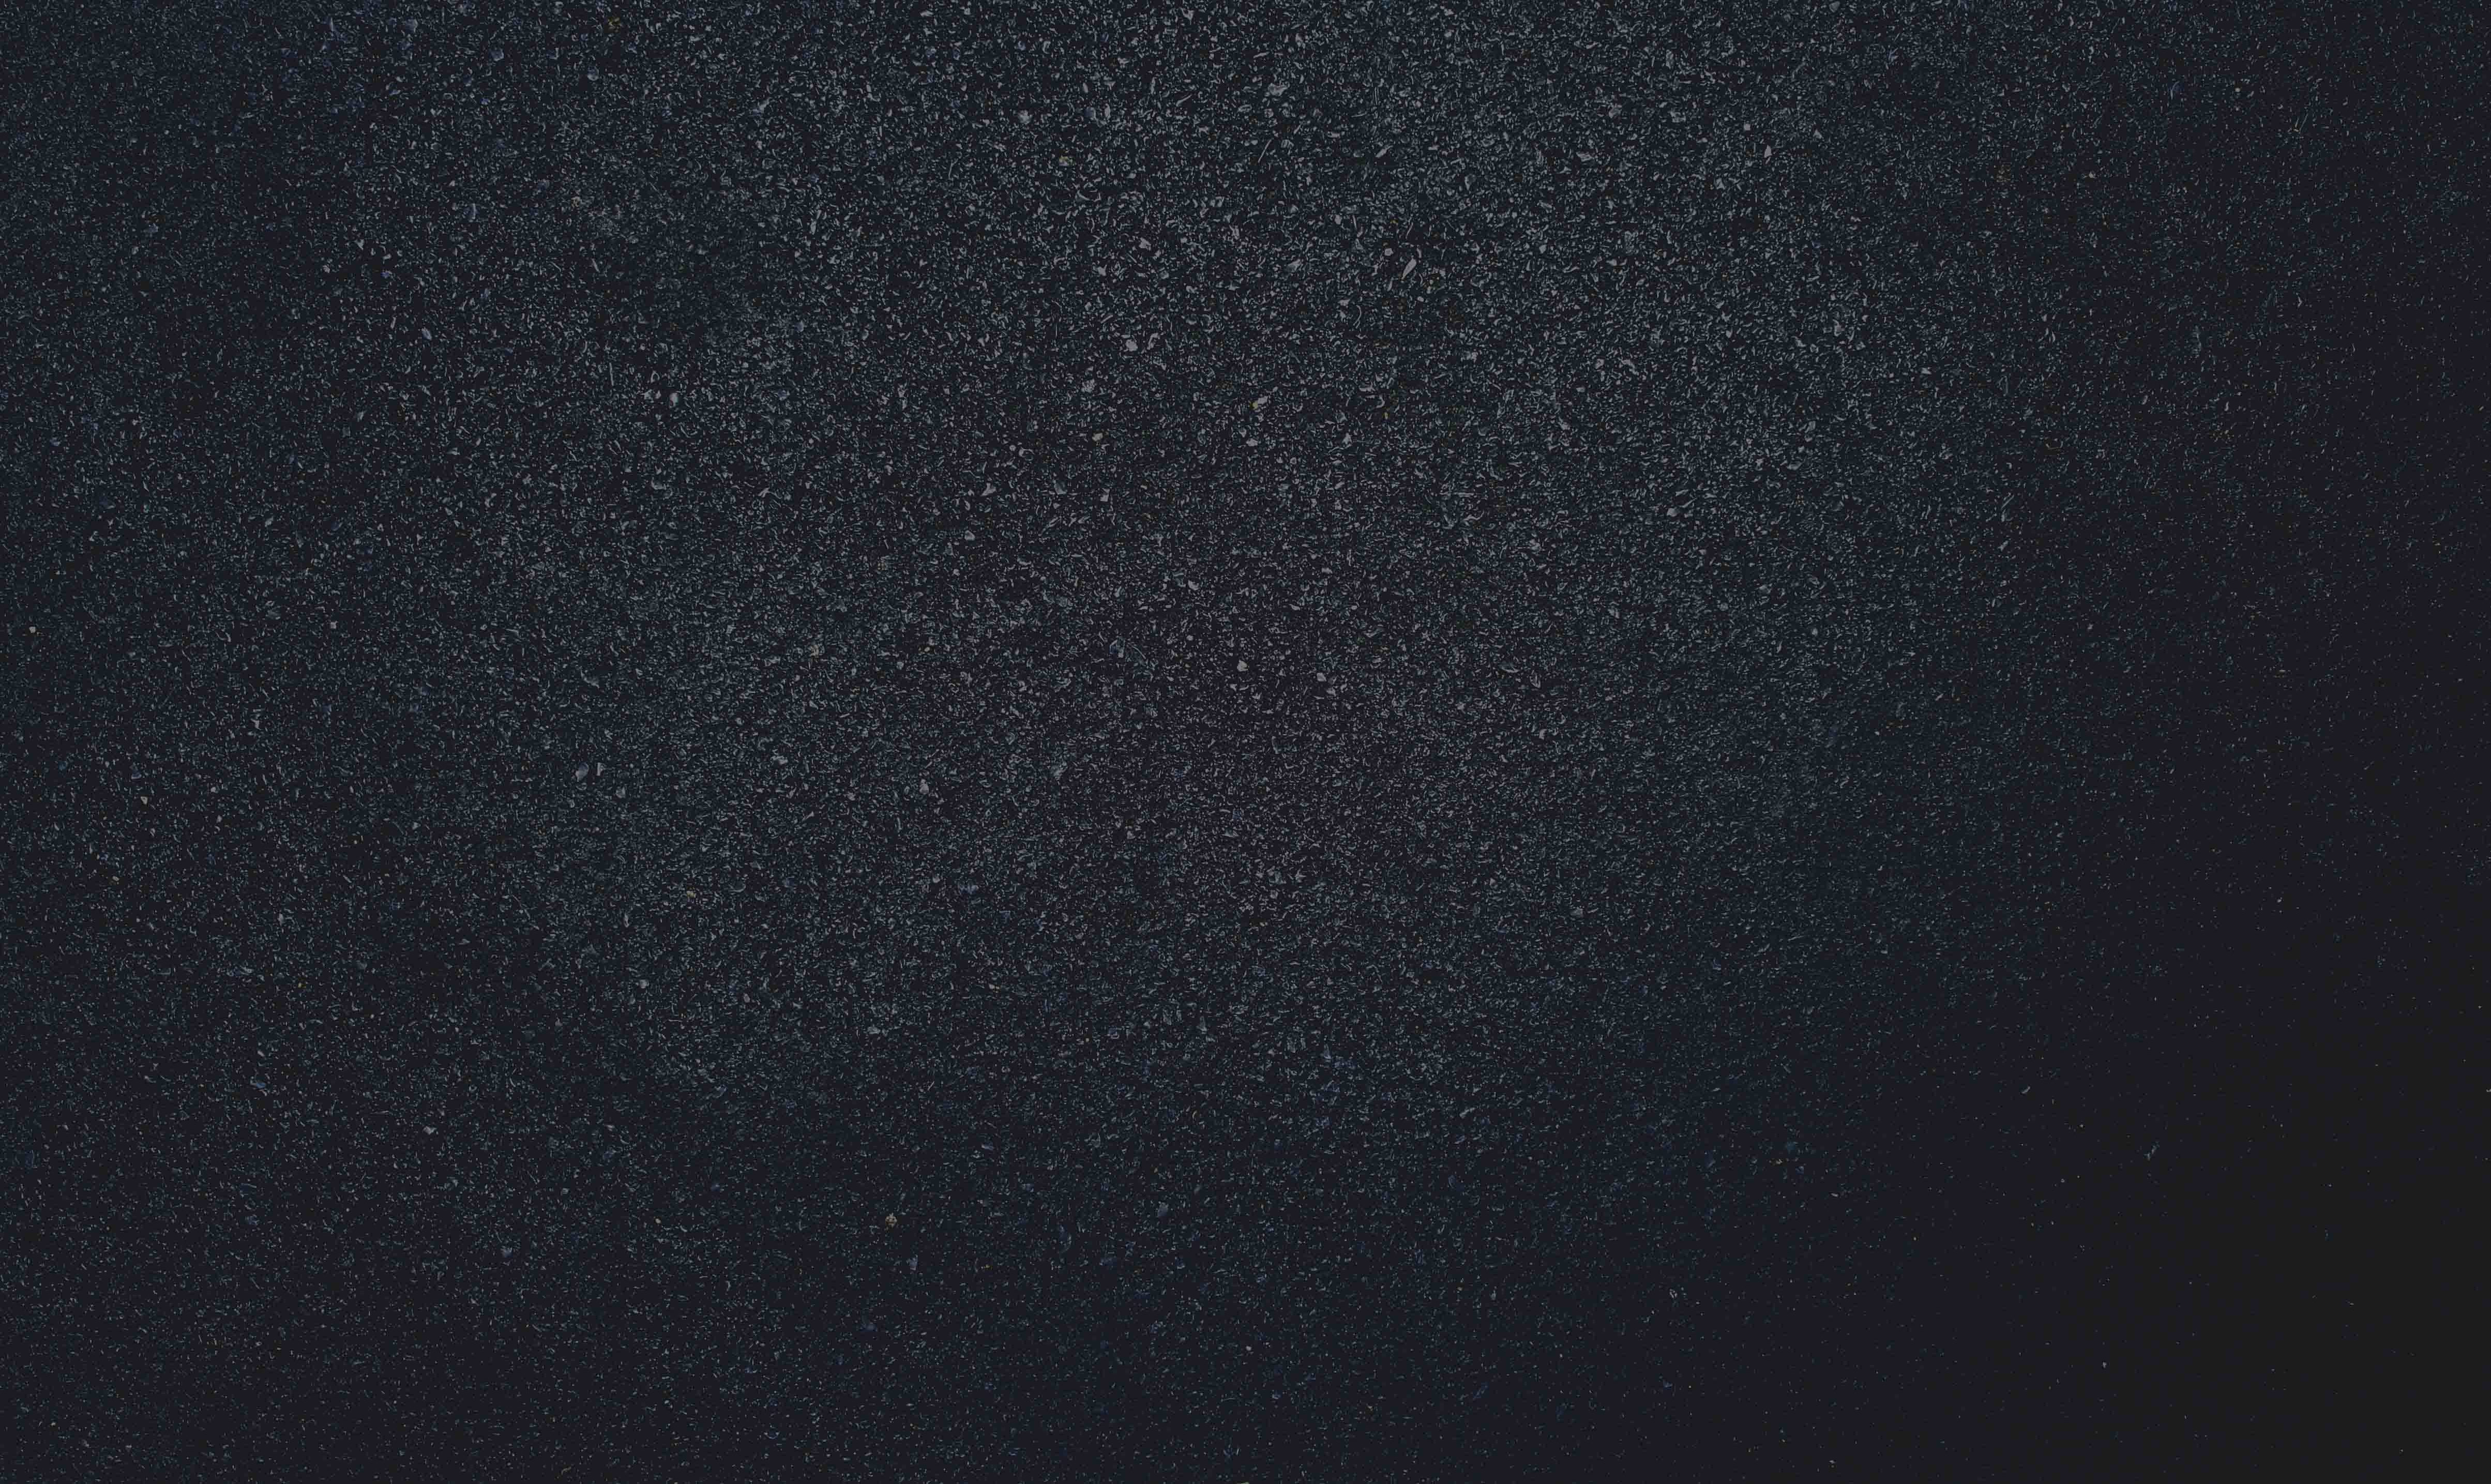 Dark asphalt texture powerpoint template picture